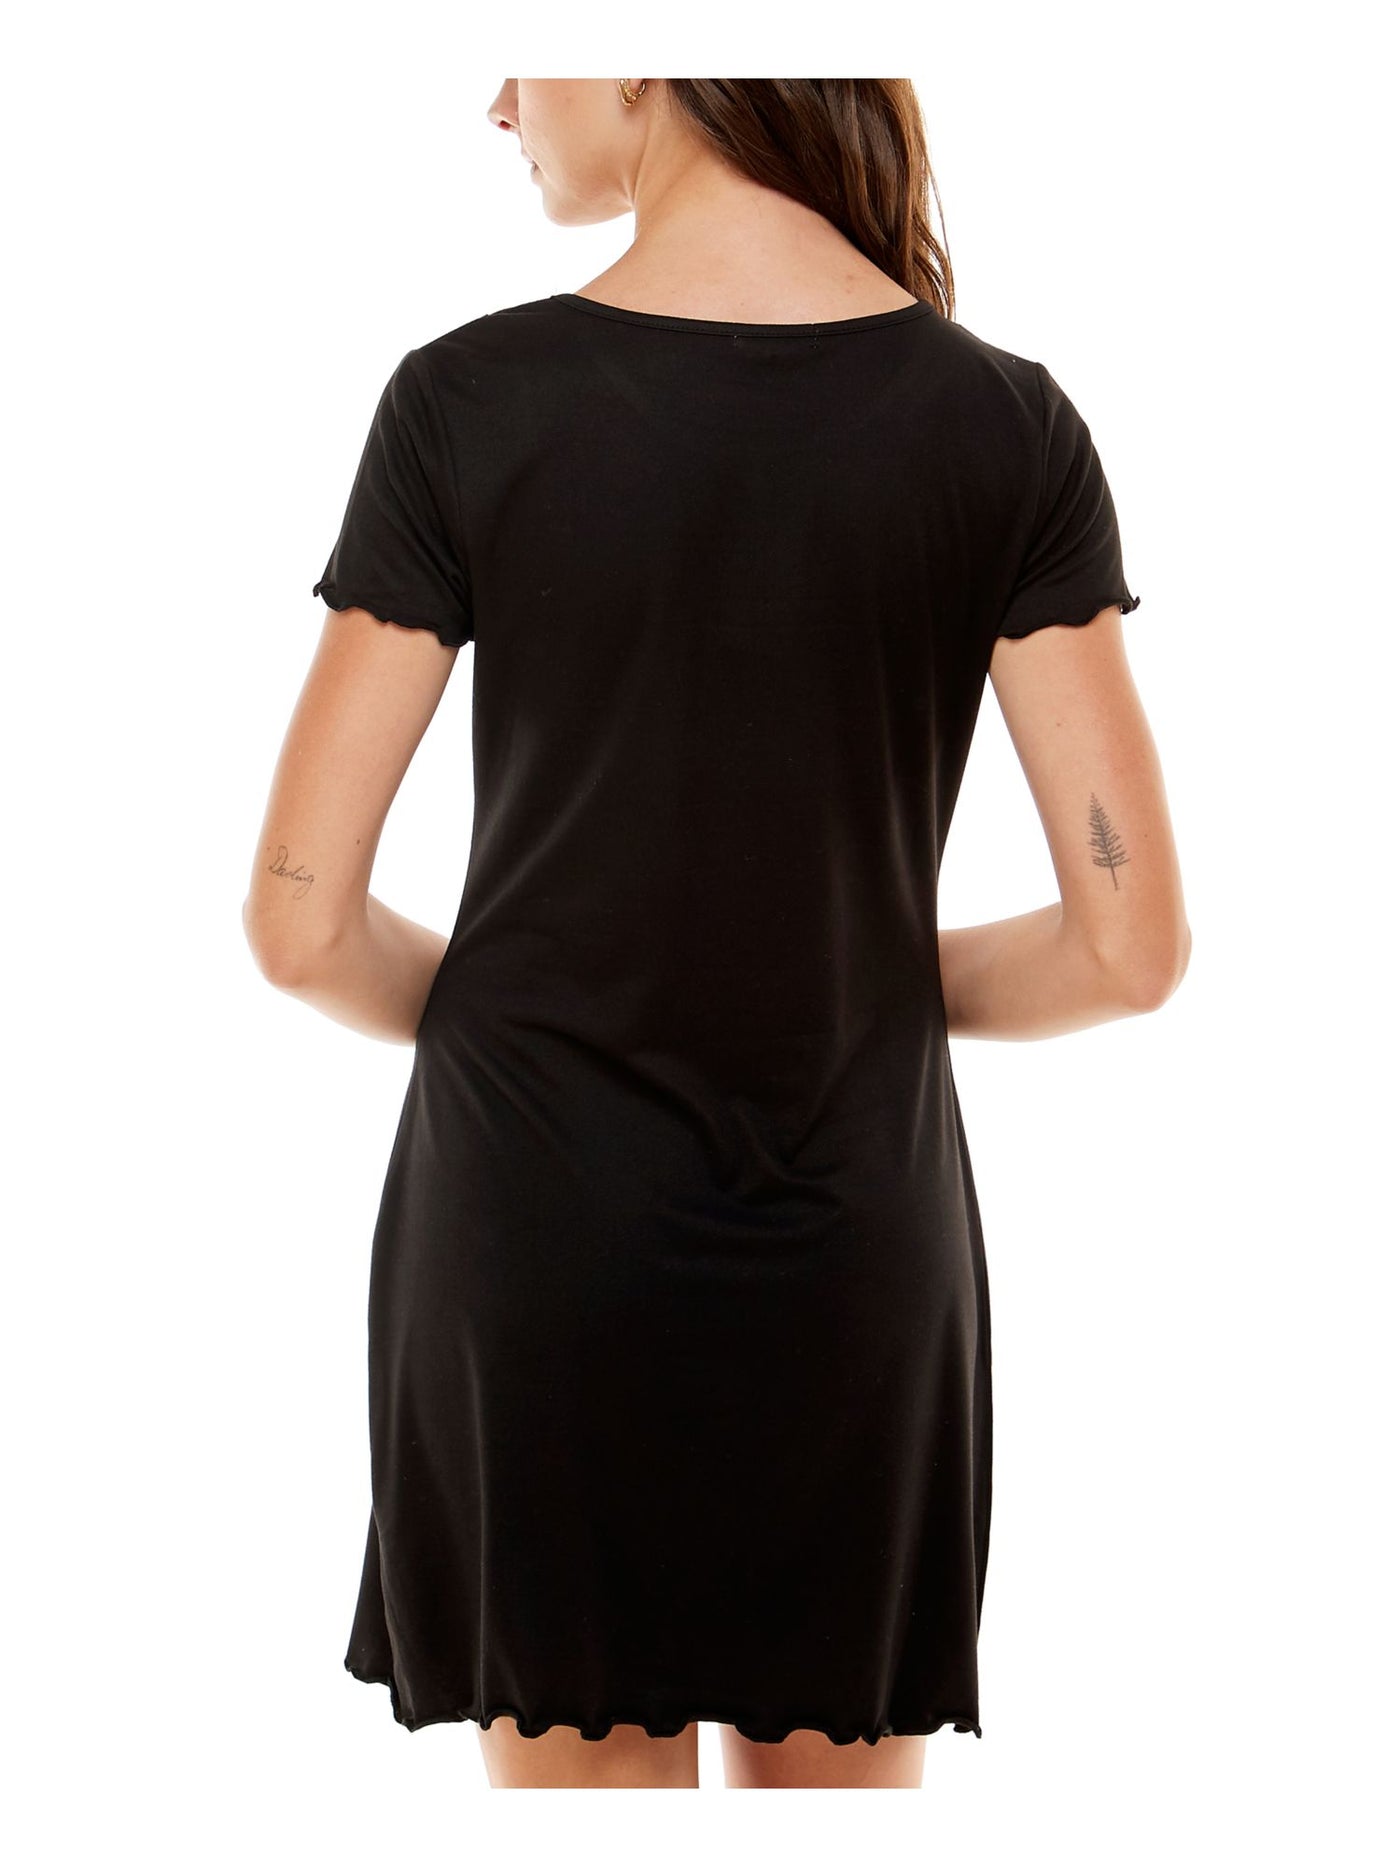 ULTRA FLIRT Womens Black Stretch Short Sleeve Scoop Neck Short Shift Dress Juniors S